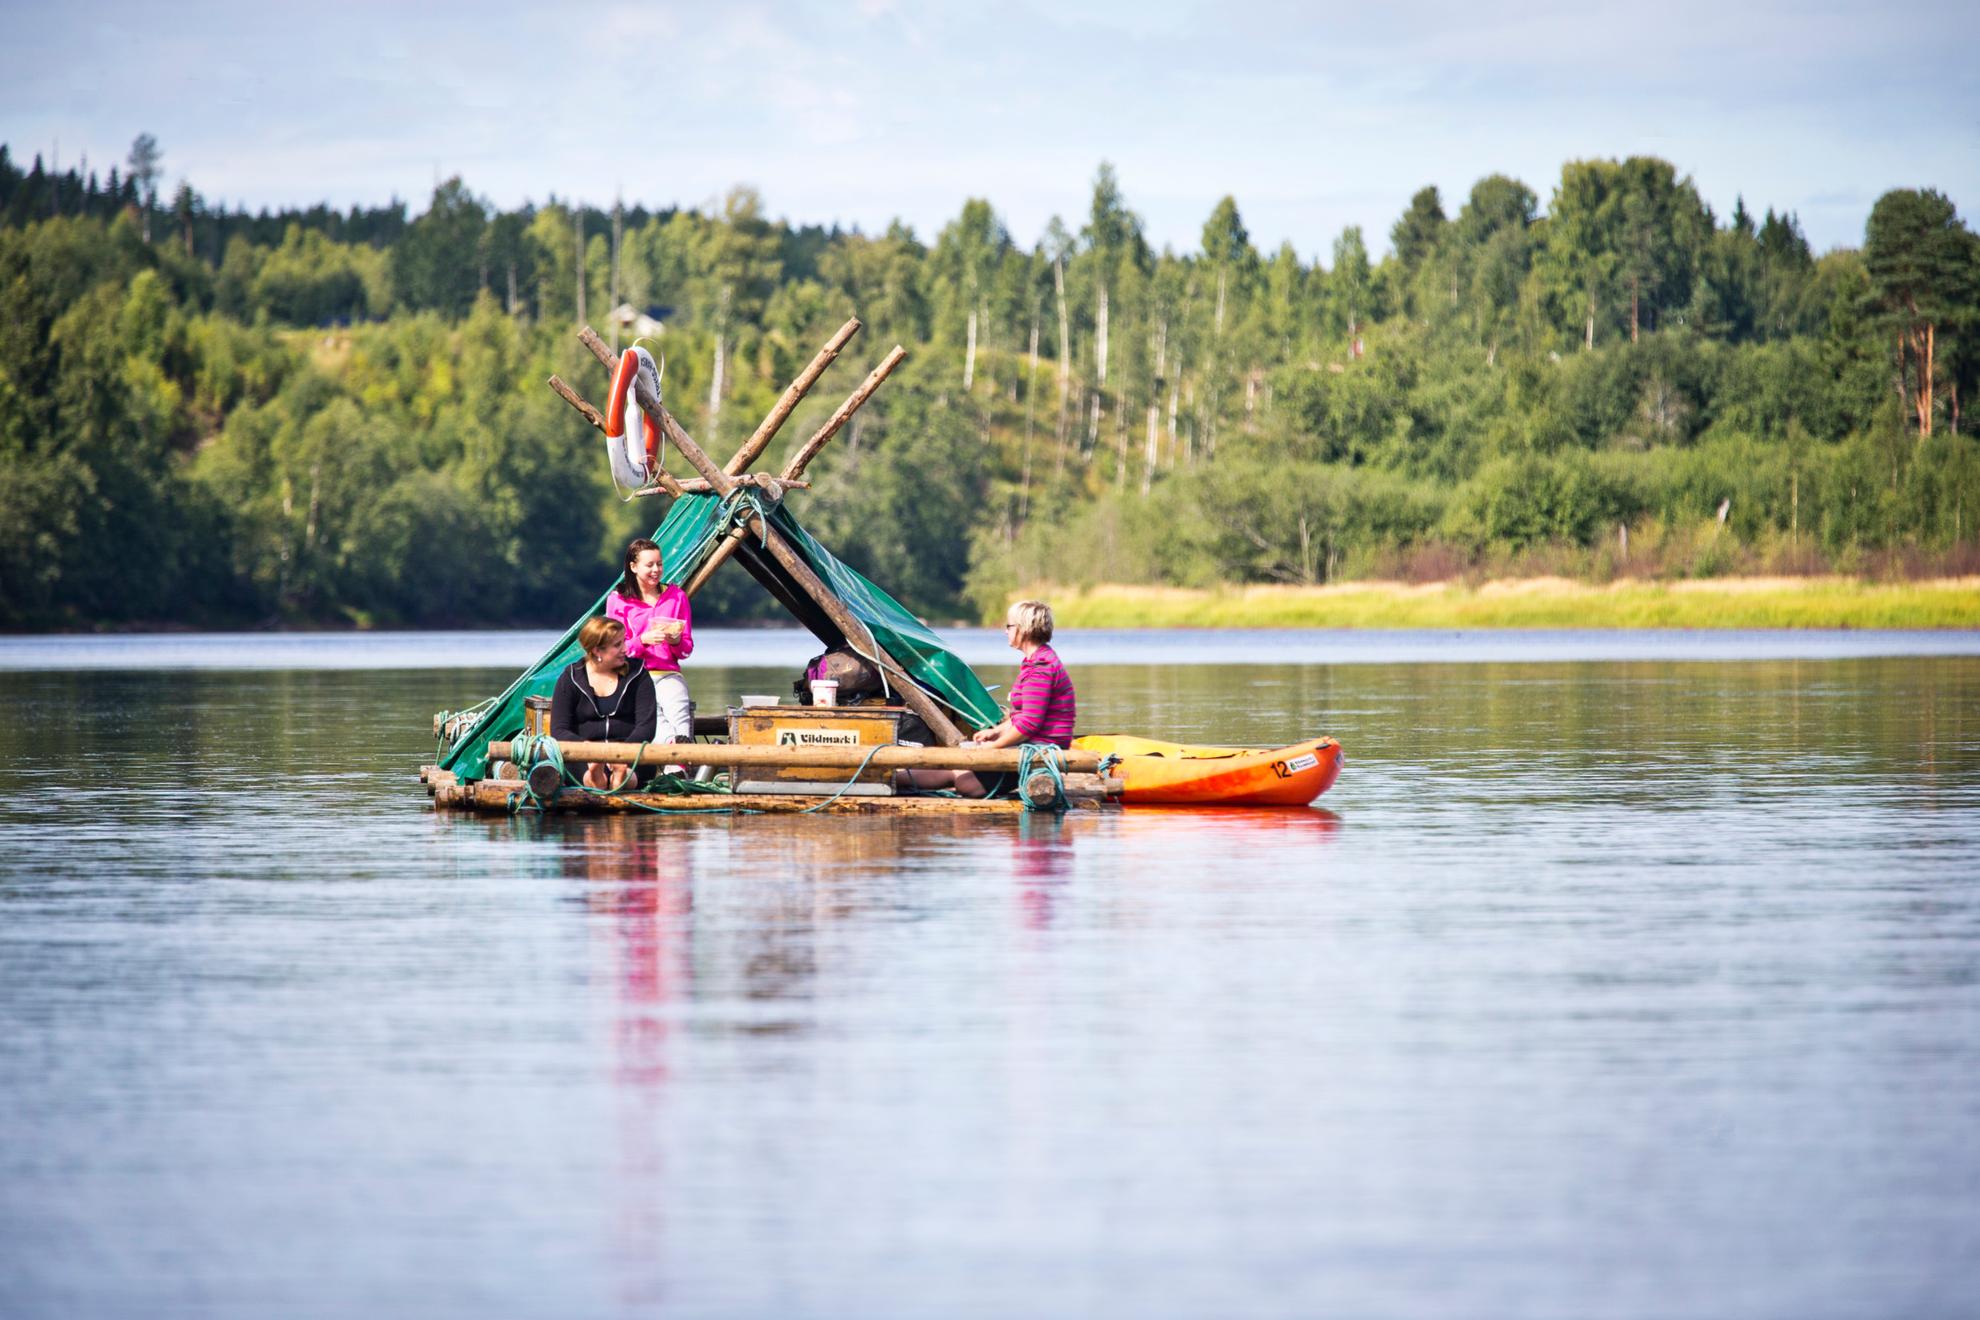 Drei Frauen lassen sich auf einem Holzfloß einen Fluss entlang treiben. Neben dem Floß steht ein Kanu. Der Fluss ist ruhig und im Hintergrund ist ein Wald zu sehen.